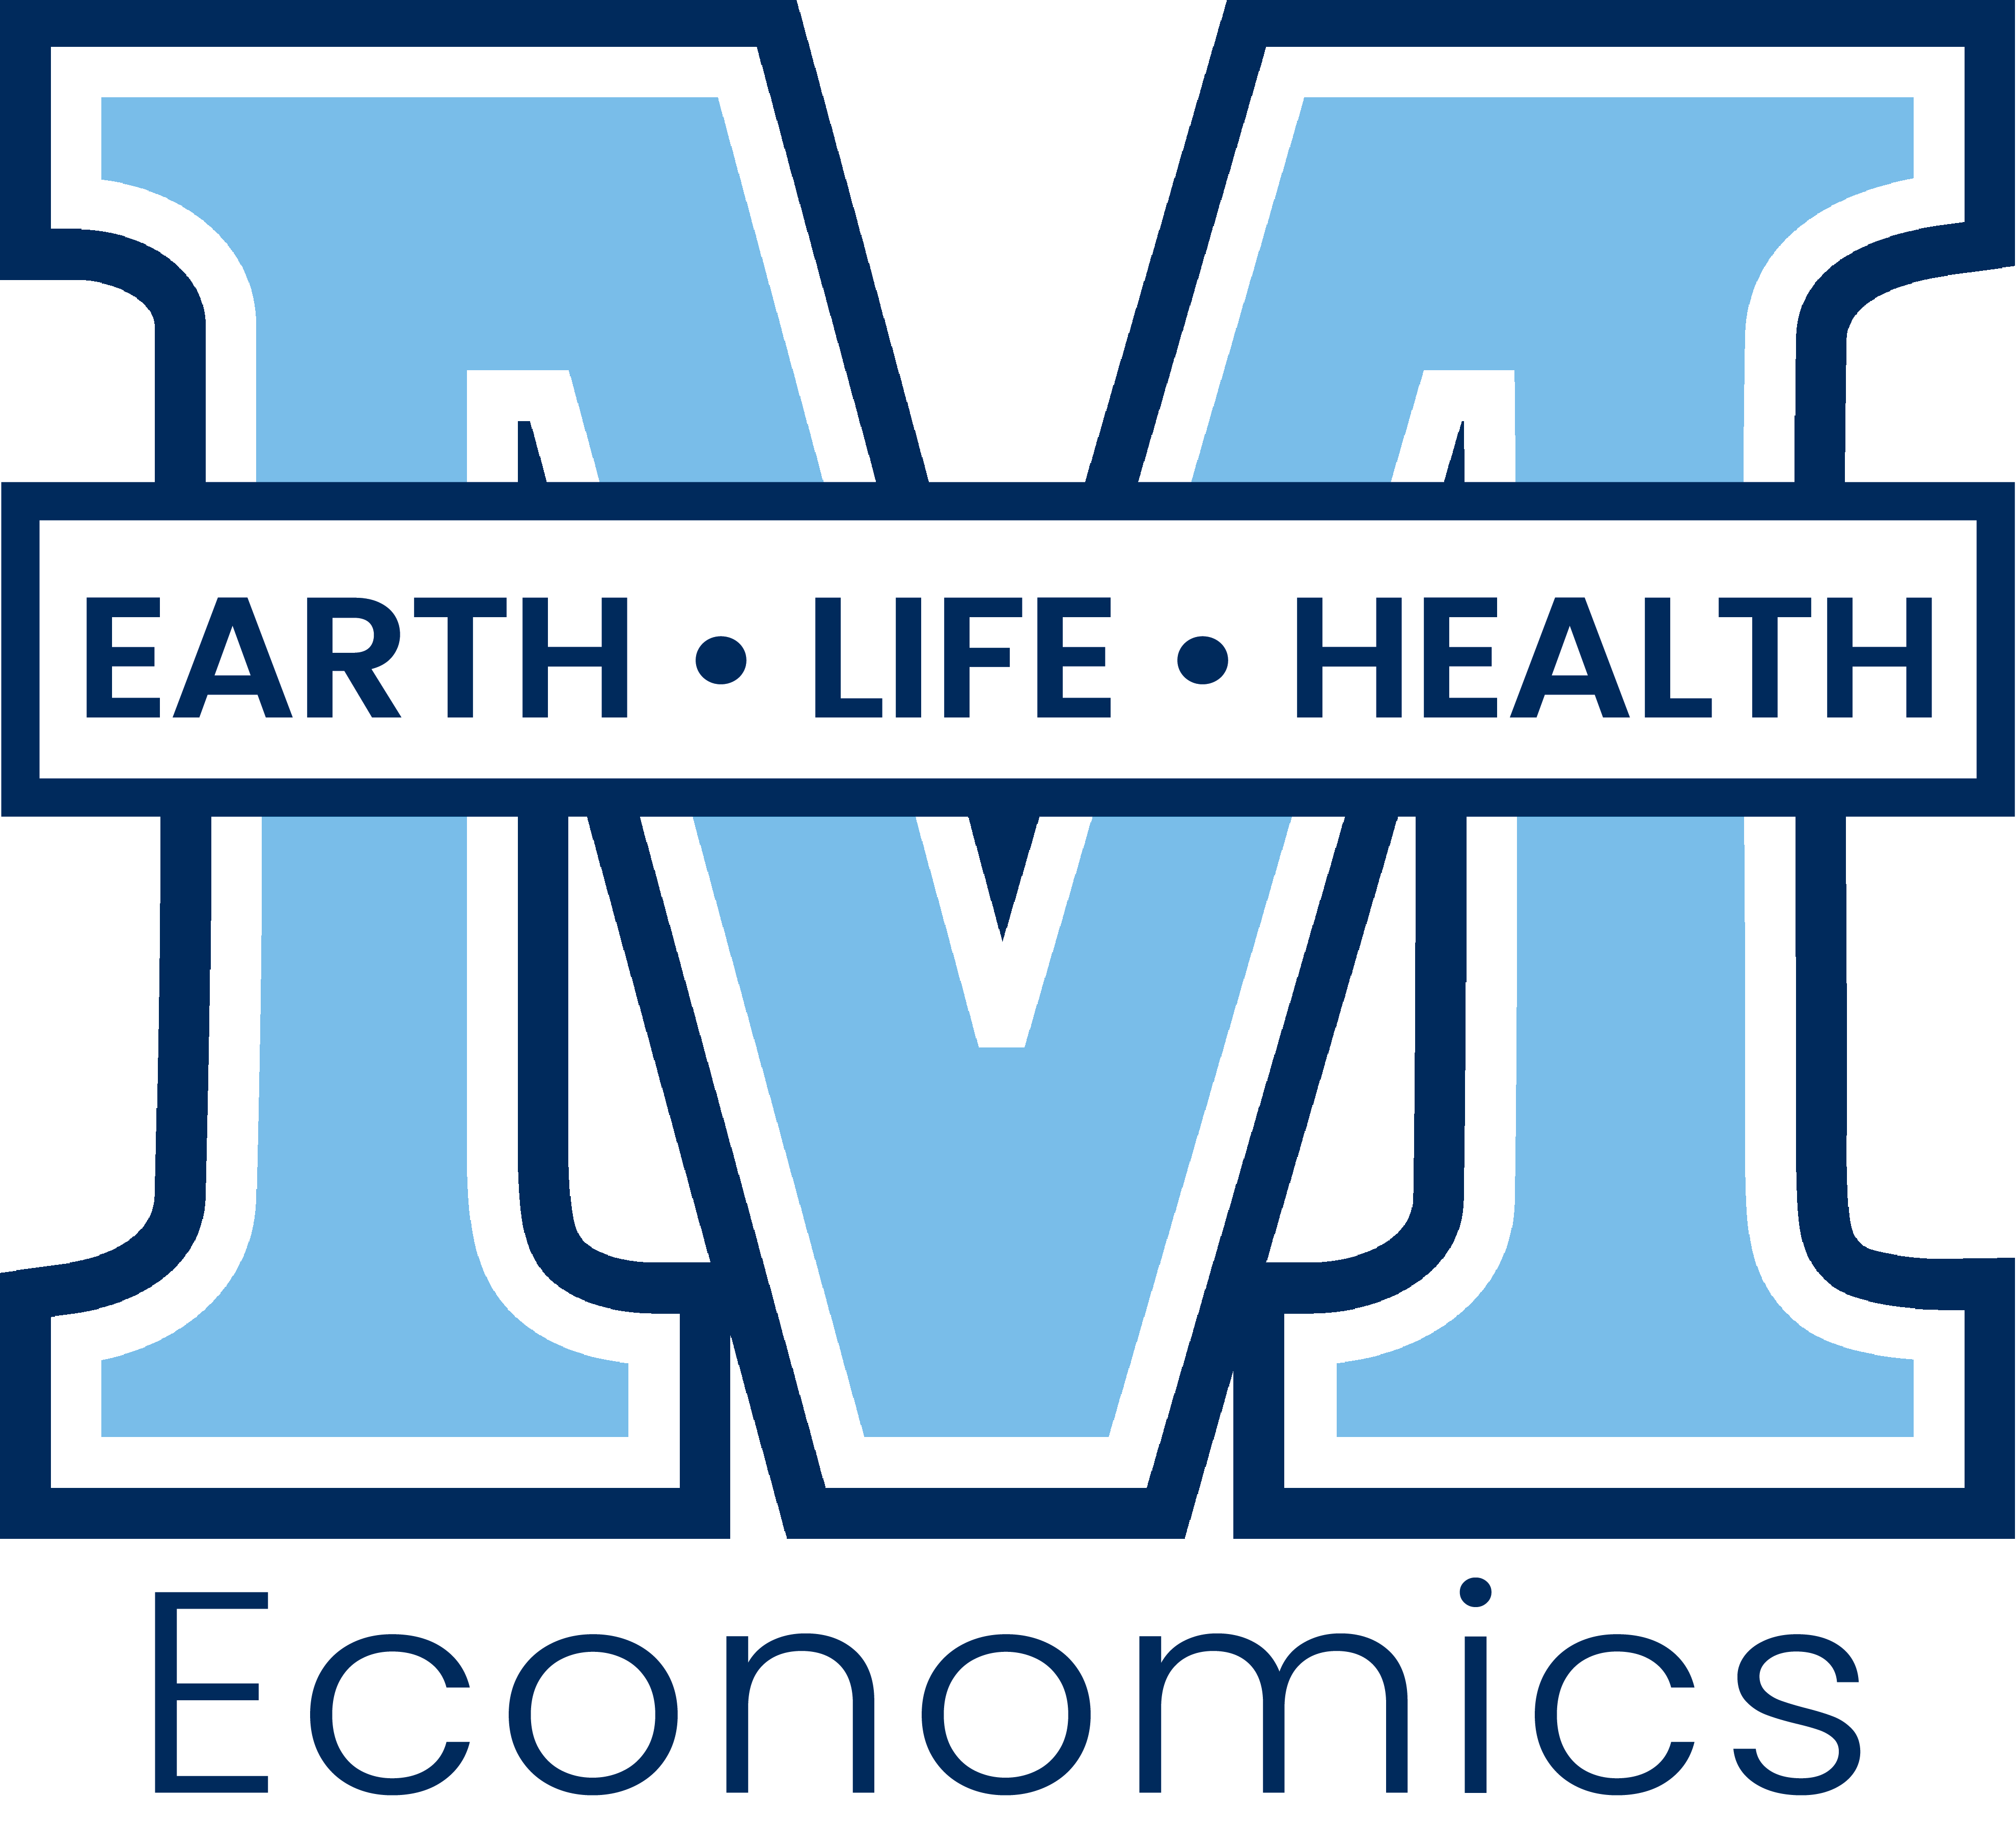 College M logo with economics